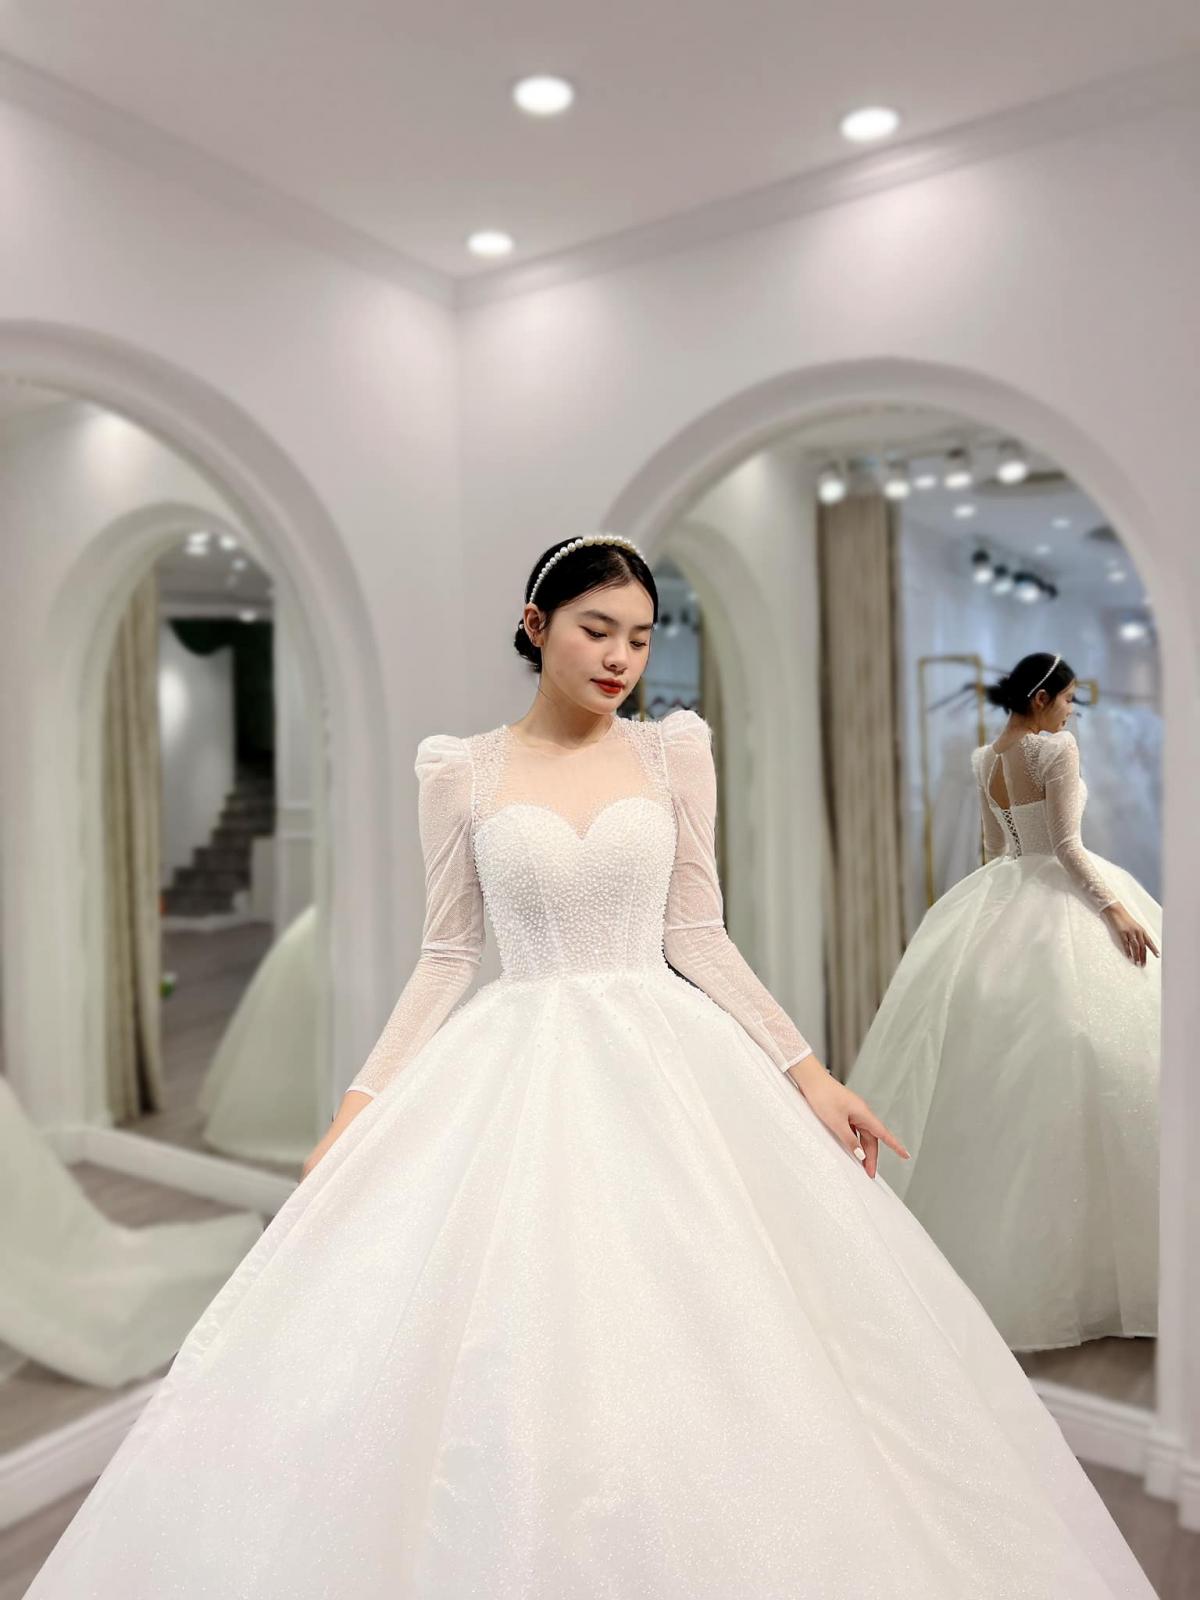 Váy cưới của em như bông tuyết mùa đông #nhactrung #lyrics #nhenhang #... |  TikTok